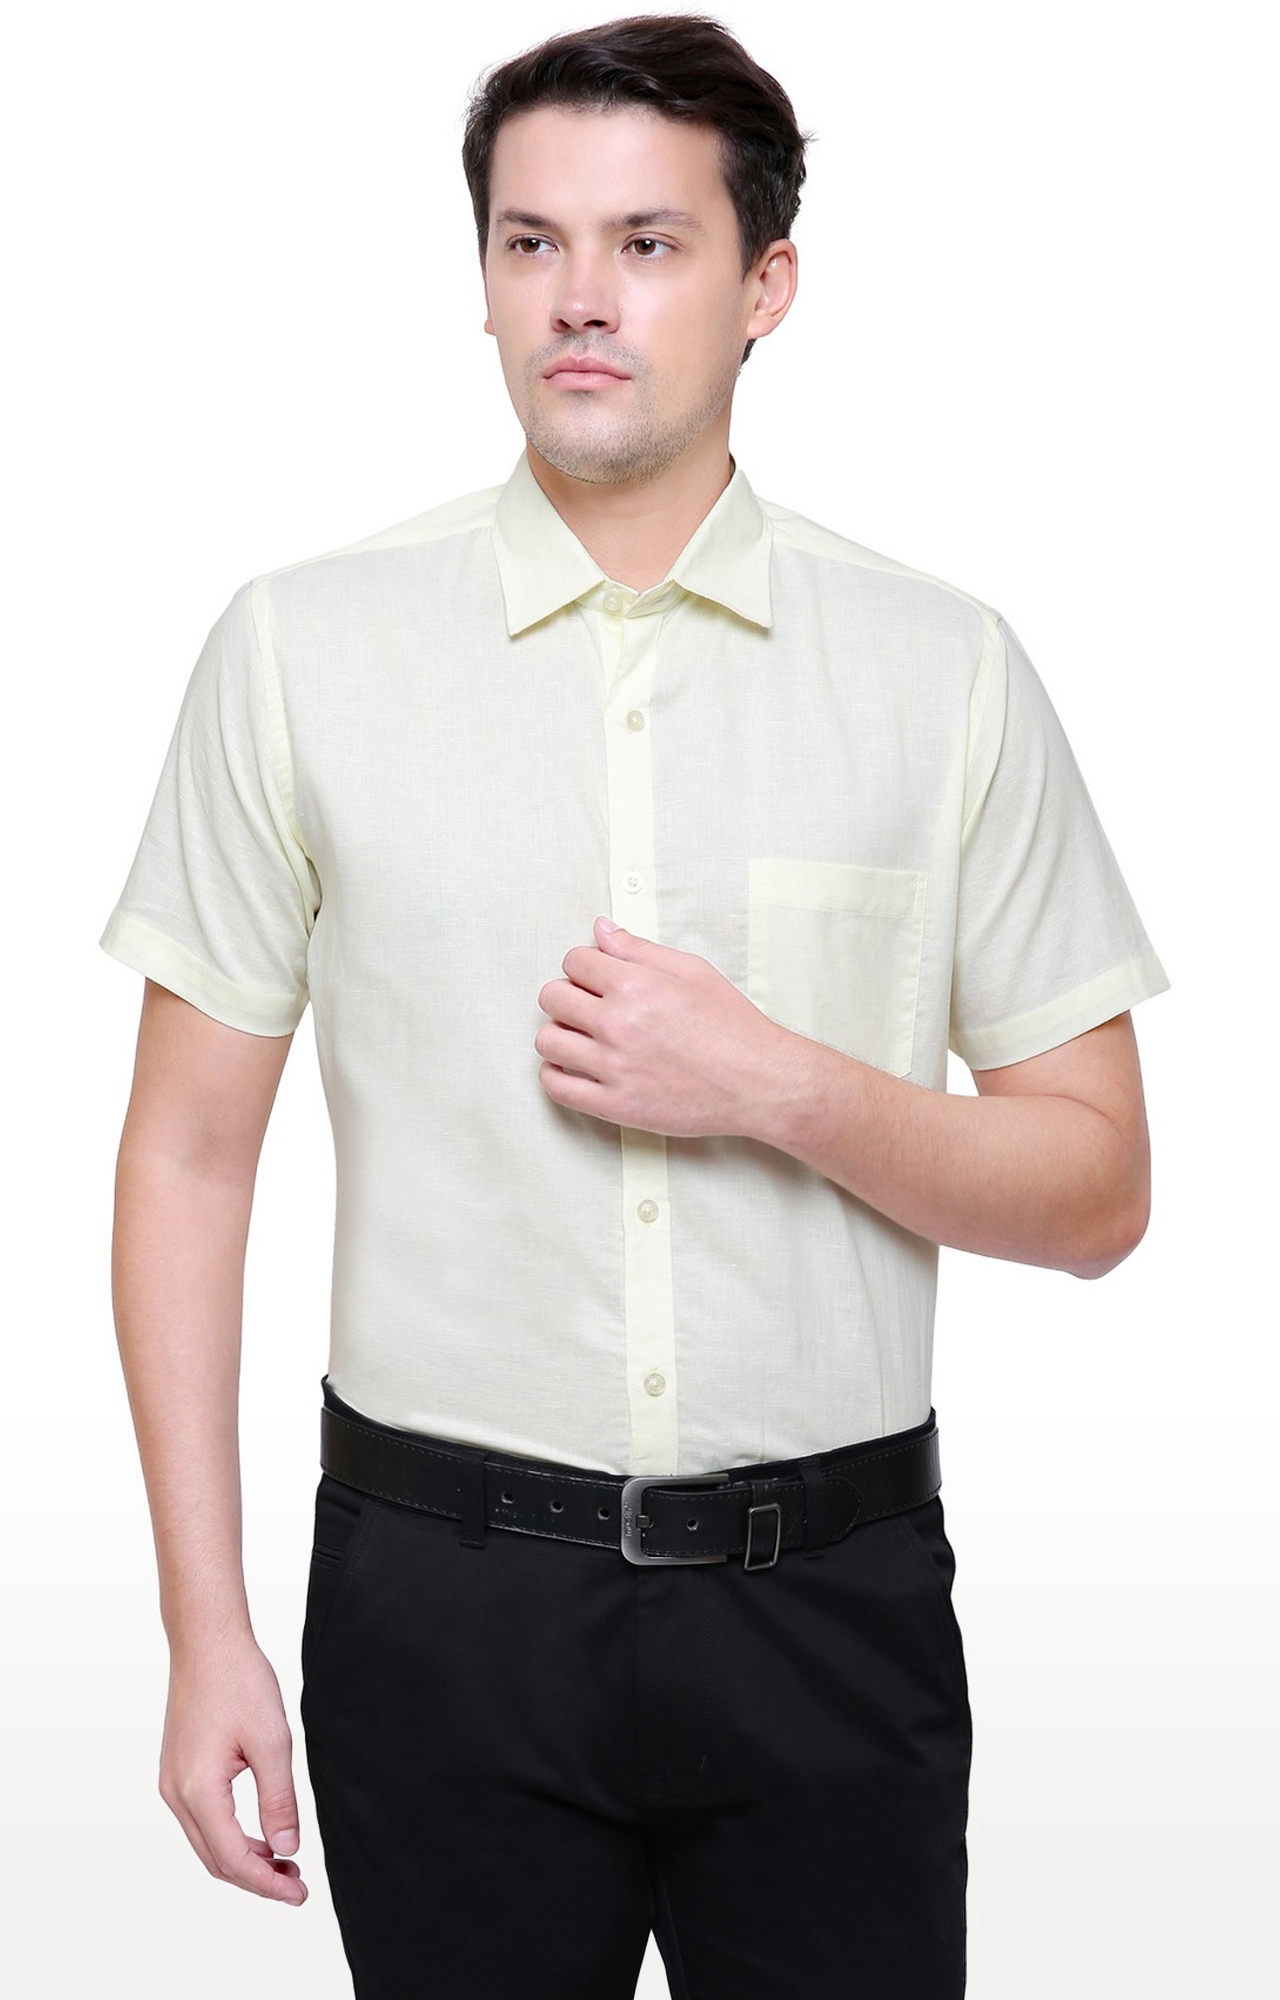 Southbay Men's Light Yellow Half Sleeve Linen Cotton Formal Shirt